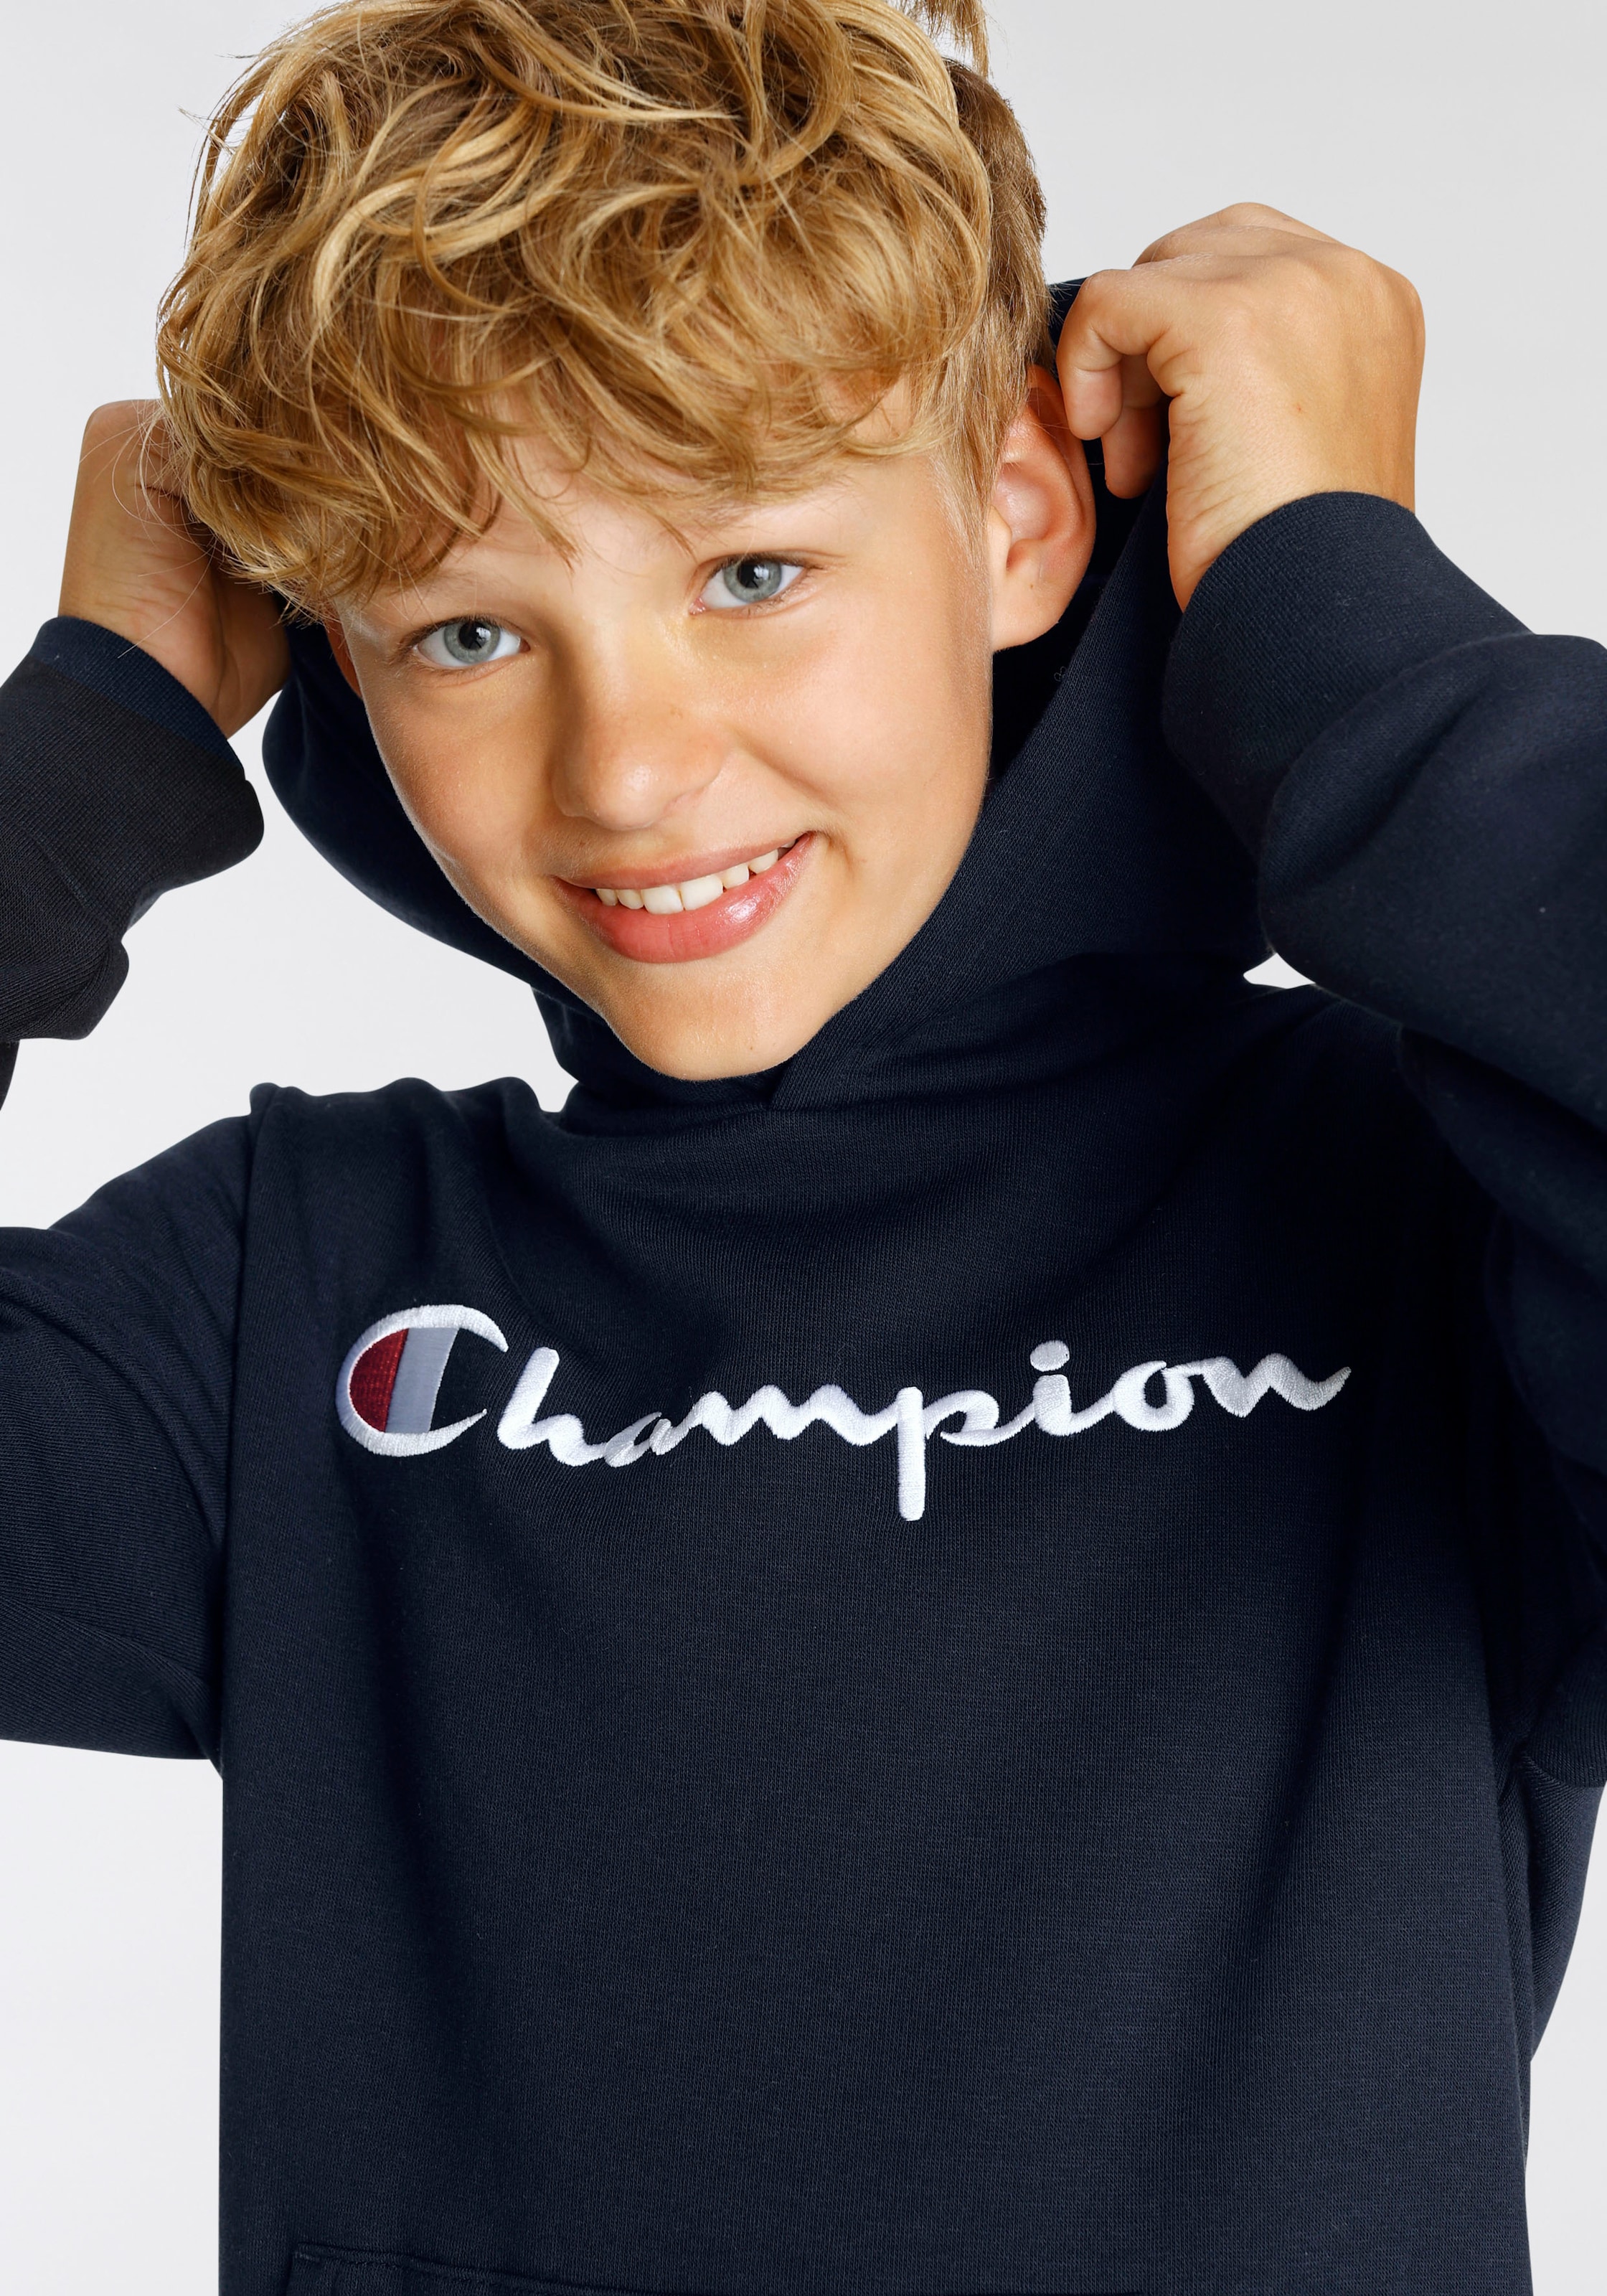 - bestellen »Classic Sweatshirt für large Hooded Kinder« Sweatshirt Logo Champion